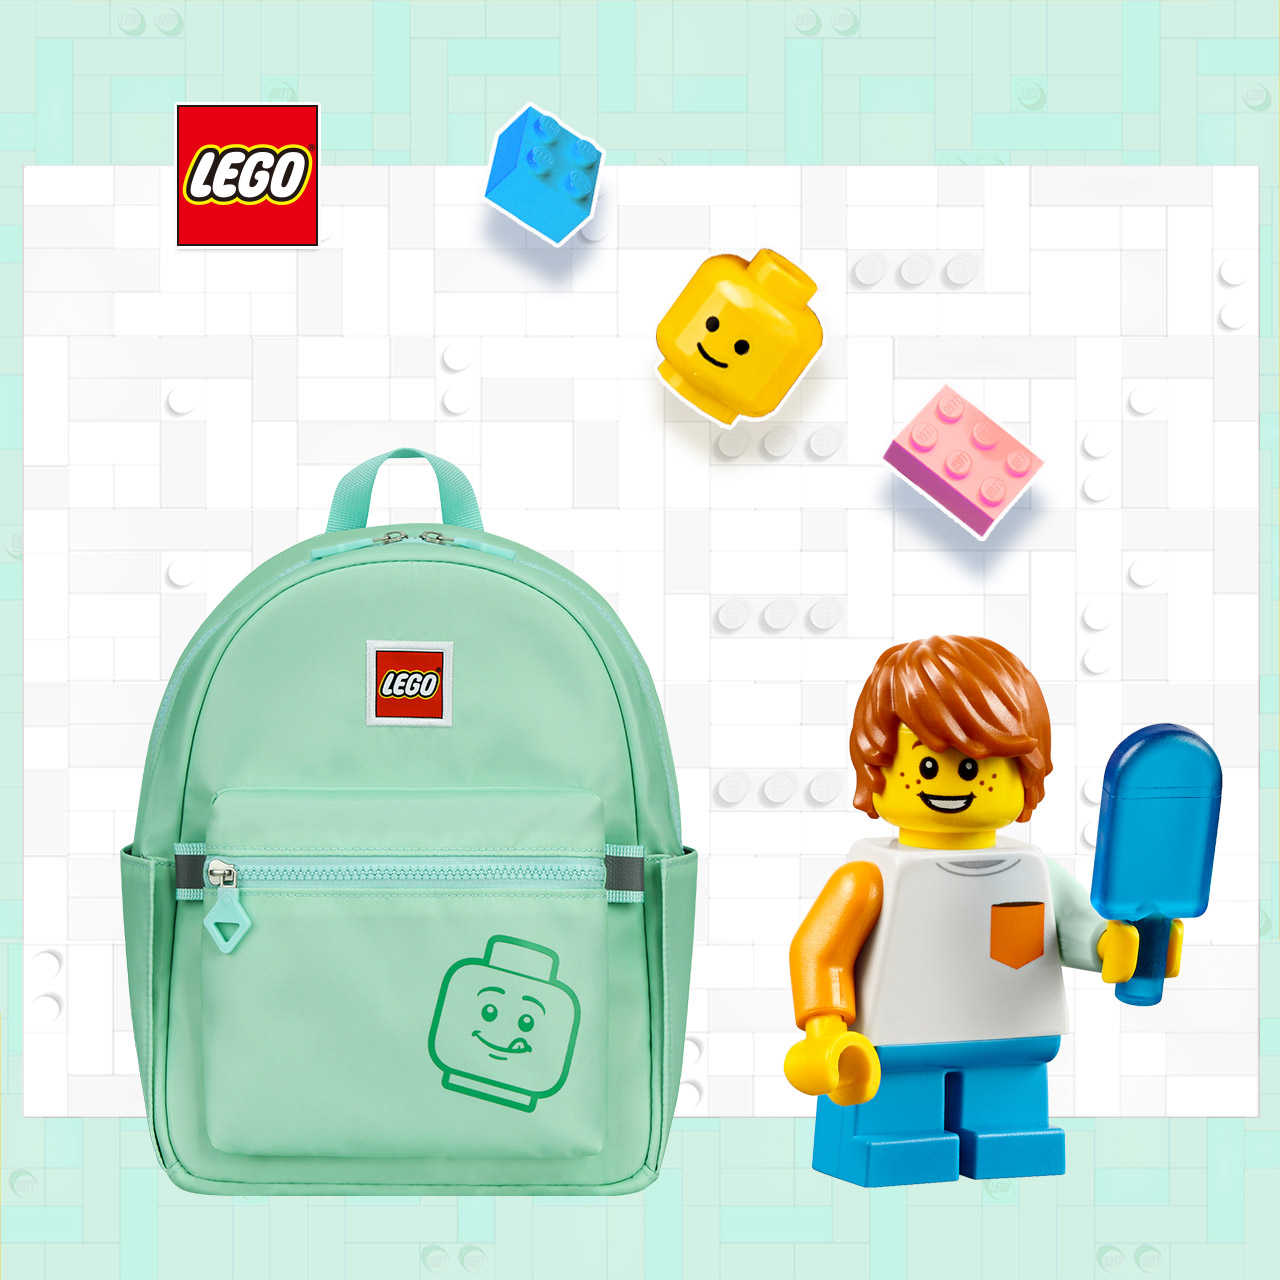 LEGO丹麥樂高笑臉小背包-積木表情符號綠色 20129-1938